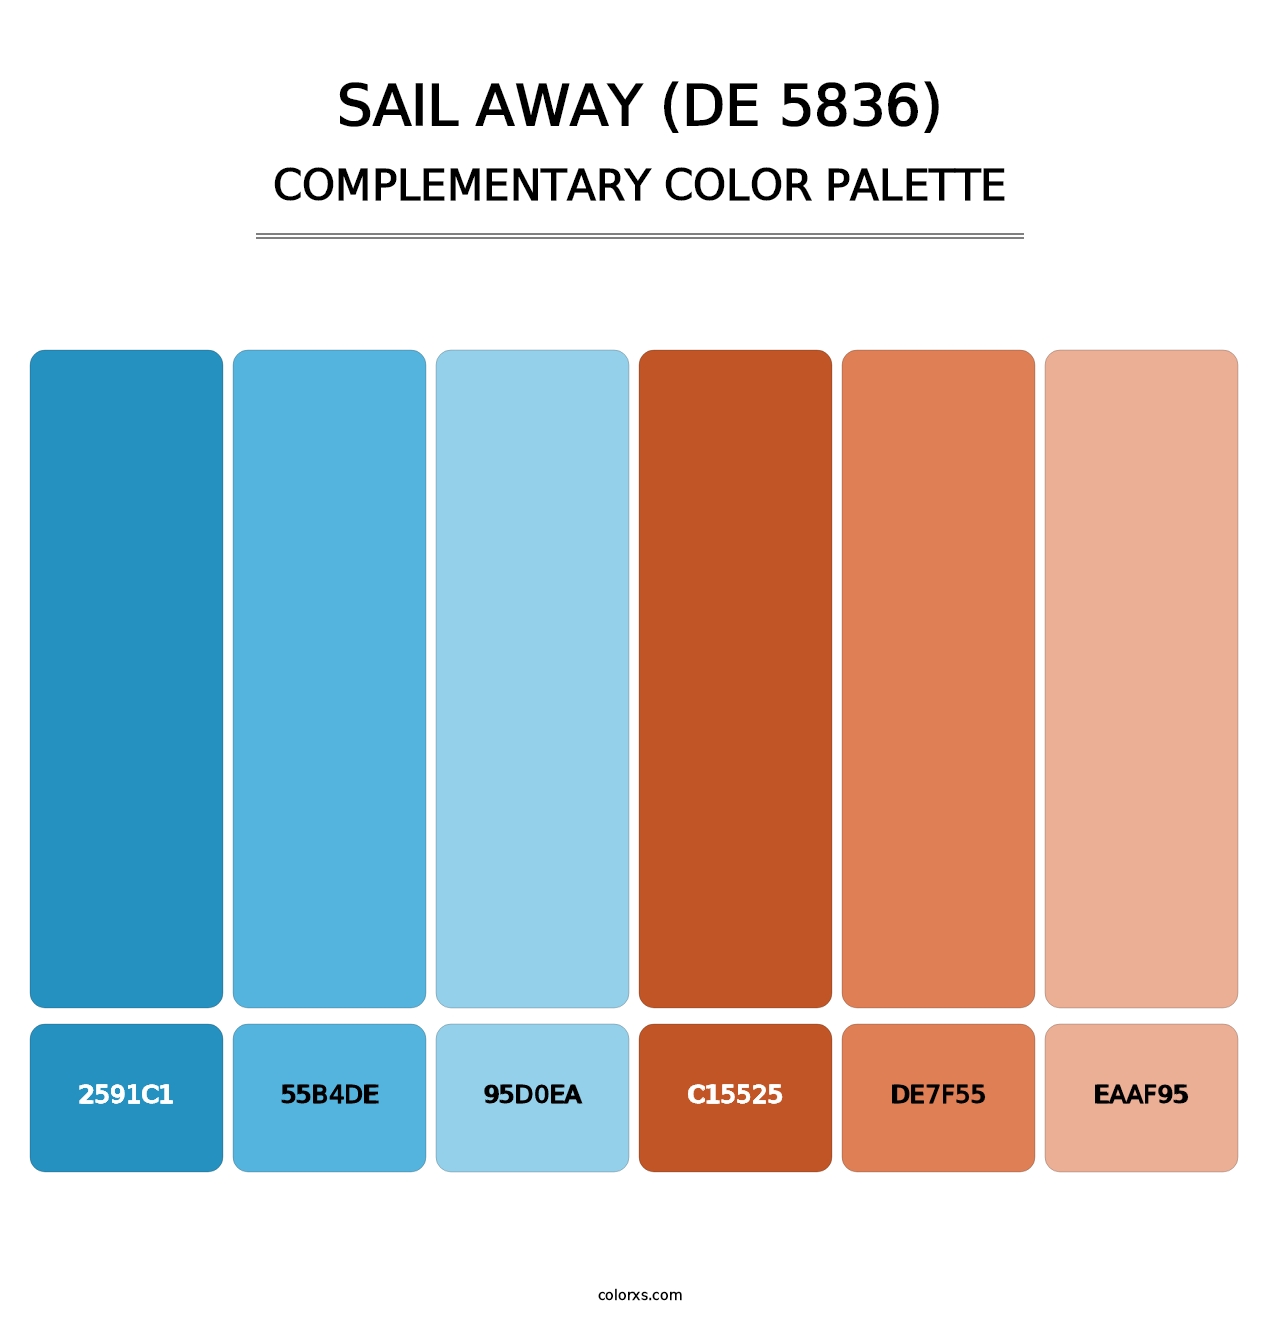 Sail Away (DE 5836) - Complementary Color Palette